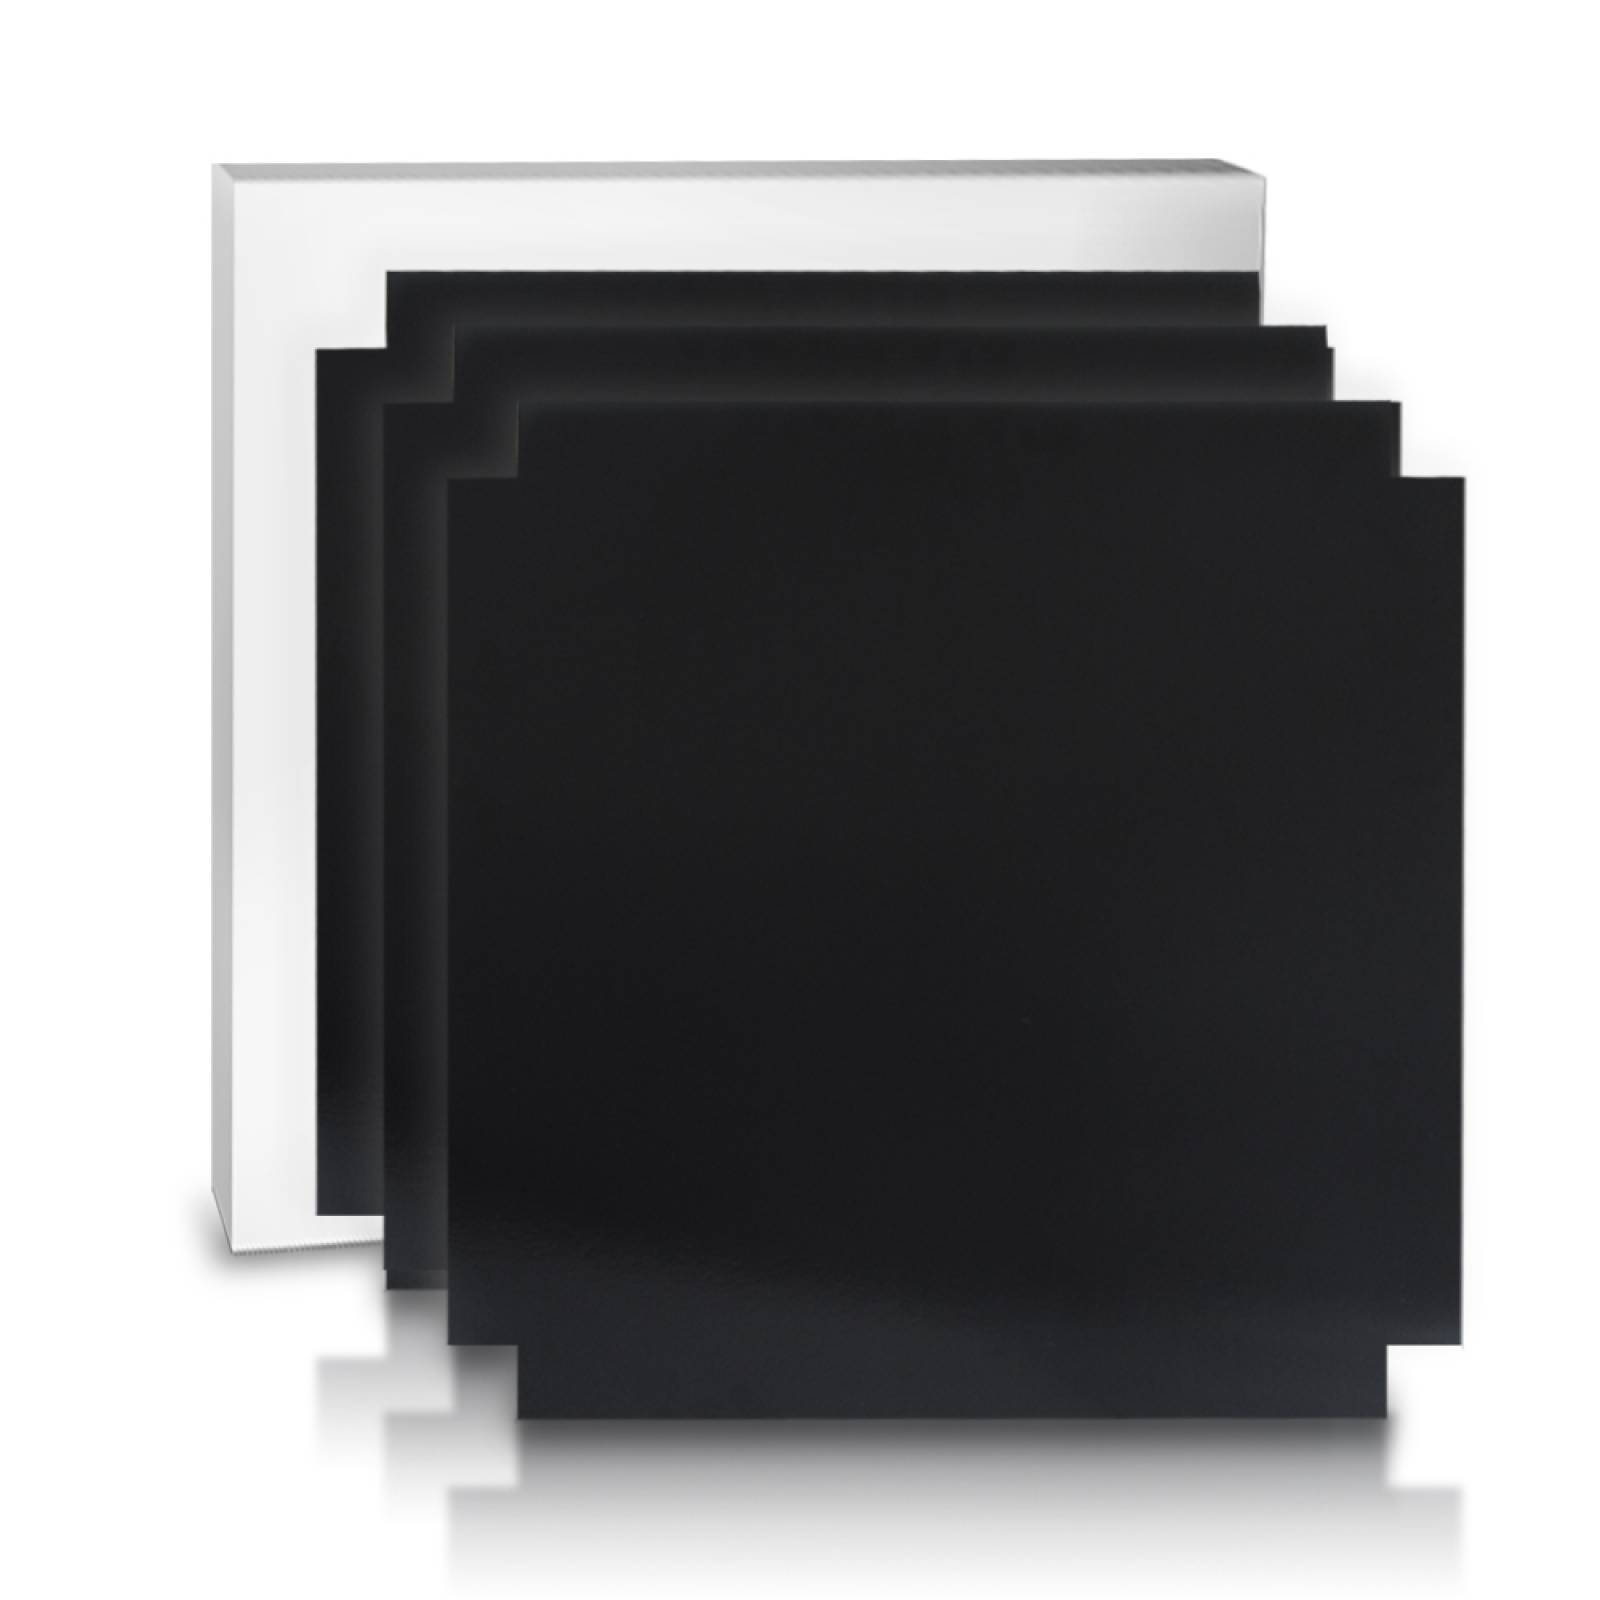 Aislante Cerámico Protector Térmico para Pared de 55 x 55 cm Negro, Paquete 3 Piezas, Mod: 1PTPP3Ne